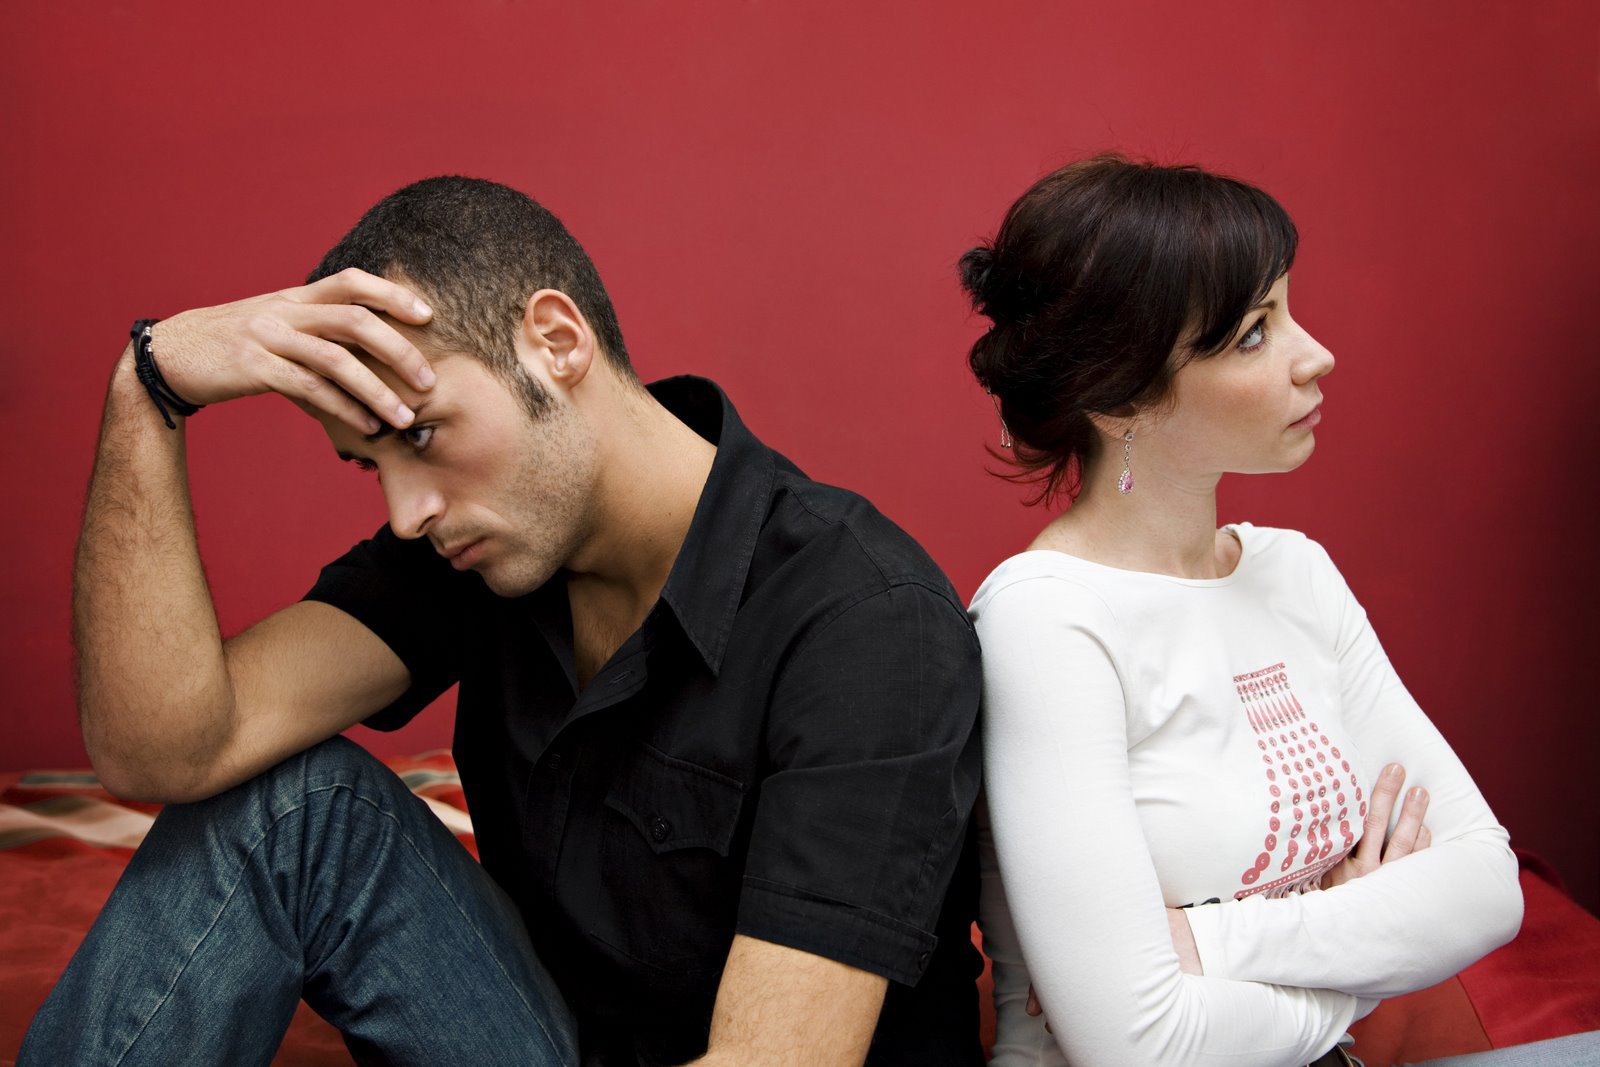 برخي از عوامل و هشدارهايي که خطر طلاق و جدايي را افزايش مي دهند